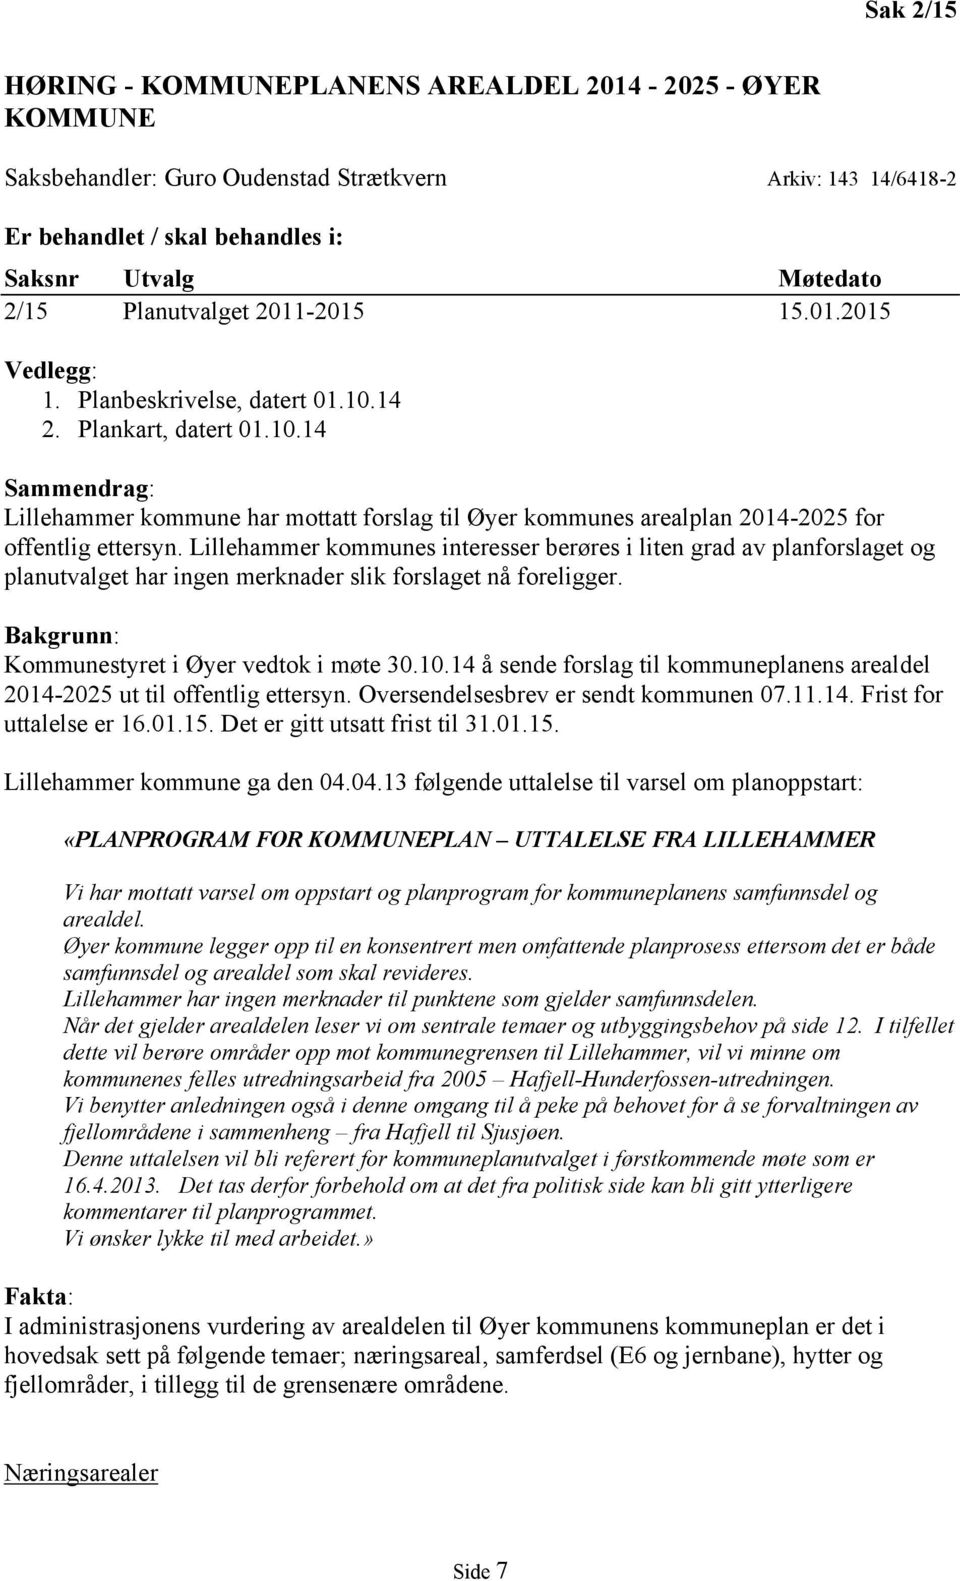 Lillehammer kommunes interesser berøres i liten grad av planforslaget og planutvalget har ingen merknader slik forslaget nå foreligger. Bakgrunn: Kommunestyret i Øyer vedtok i møte 30.10.